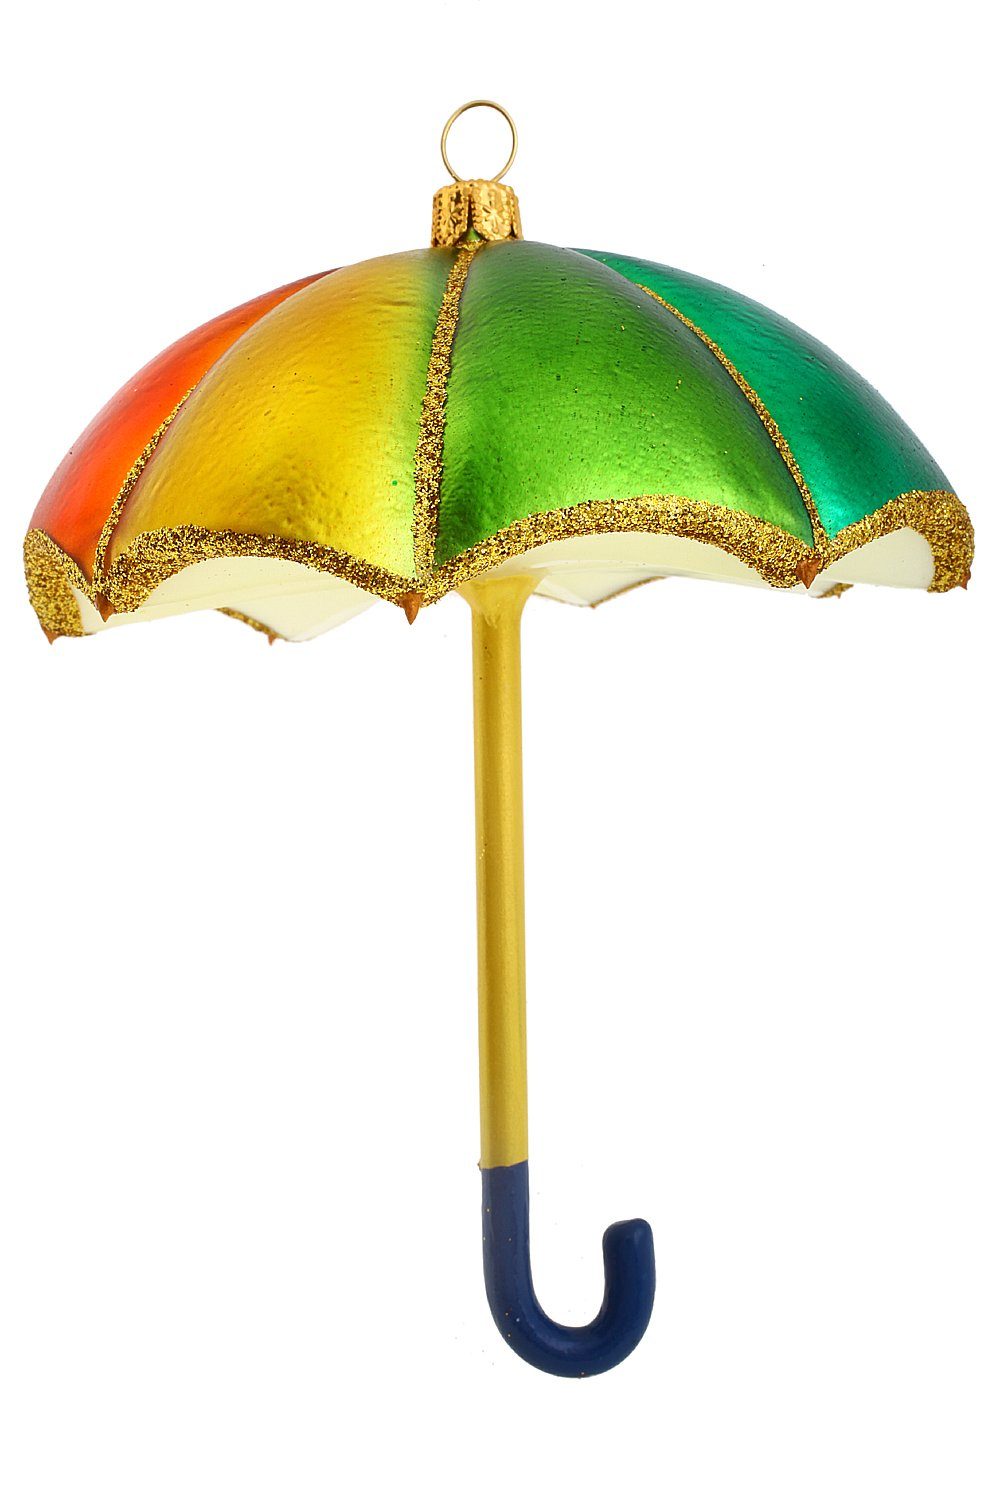 - mundgeblasen Regenschirm - Regenbogenfarben, Hamburger Weihnachtskontor Christbaumschmuck handdekoriert Dekohänger